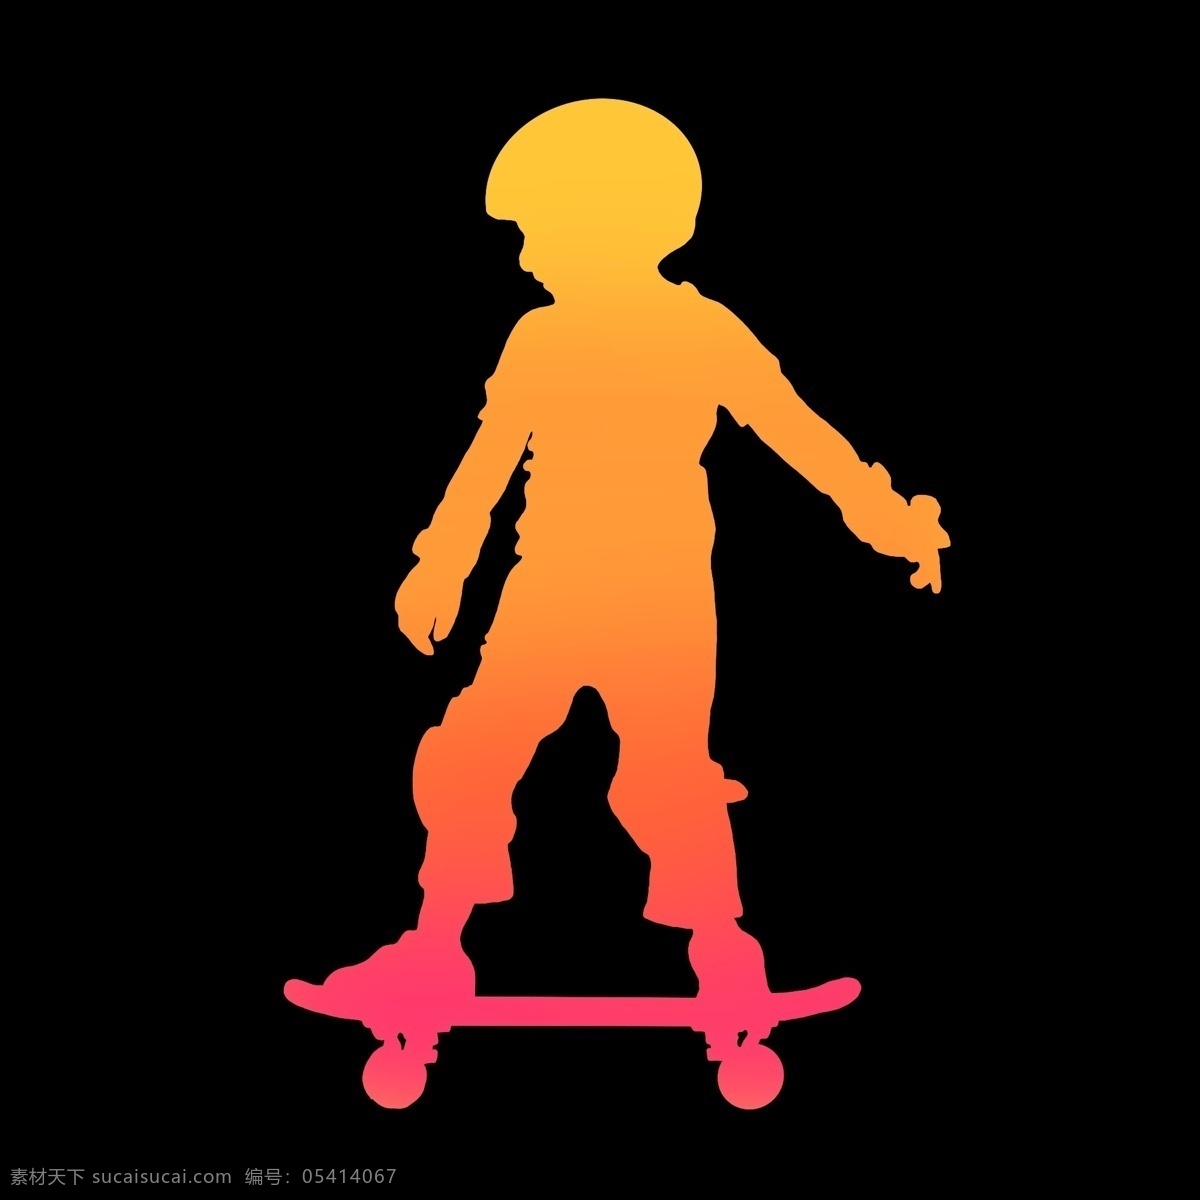 暖色 渐变 滑板 男孩 滑板车 形状 剪影 图案 动作 奔跑的样子 速度 运动 激情 节奏 ppt可用 纯色 简约 简洁 简单